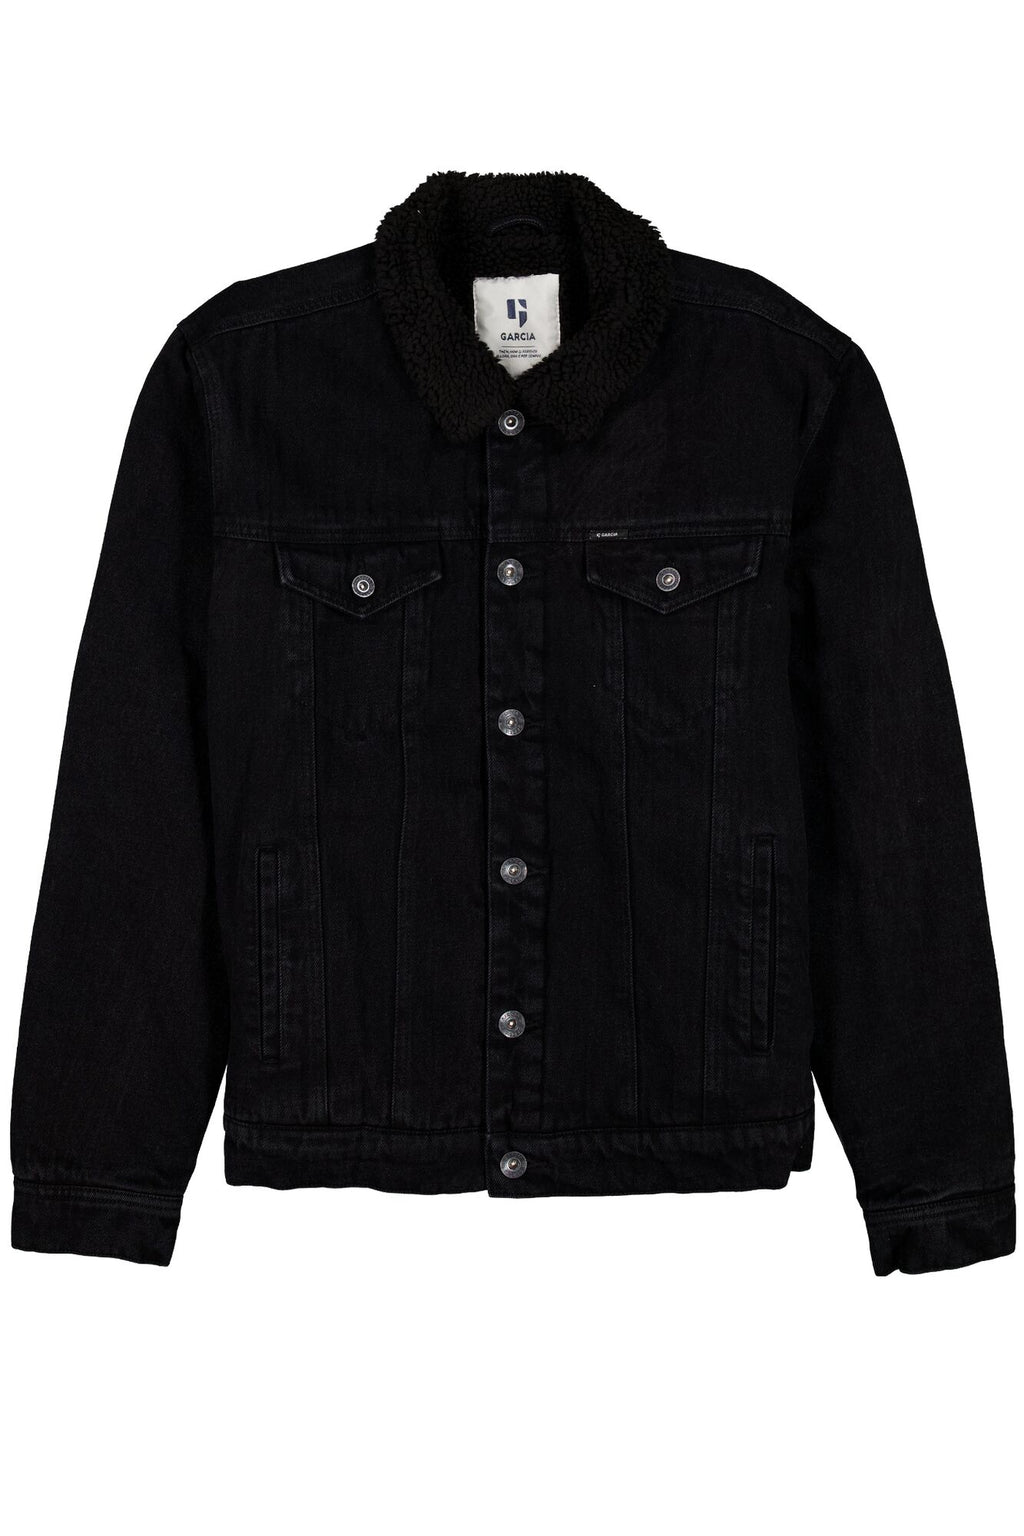 Garcia Outdoor Jacket Q23Menswear Black –